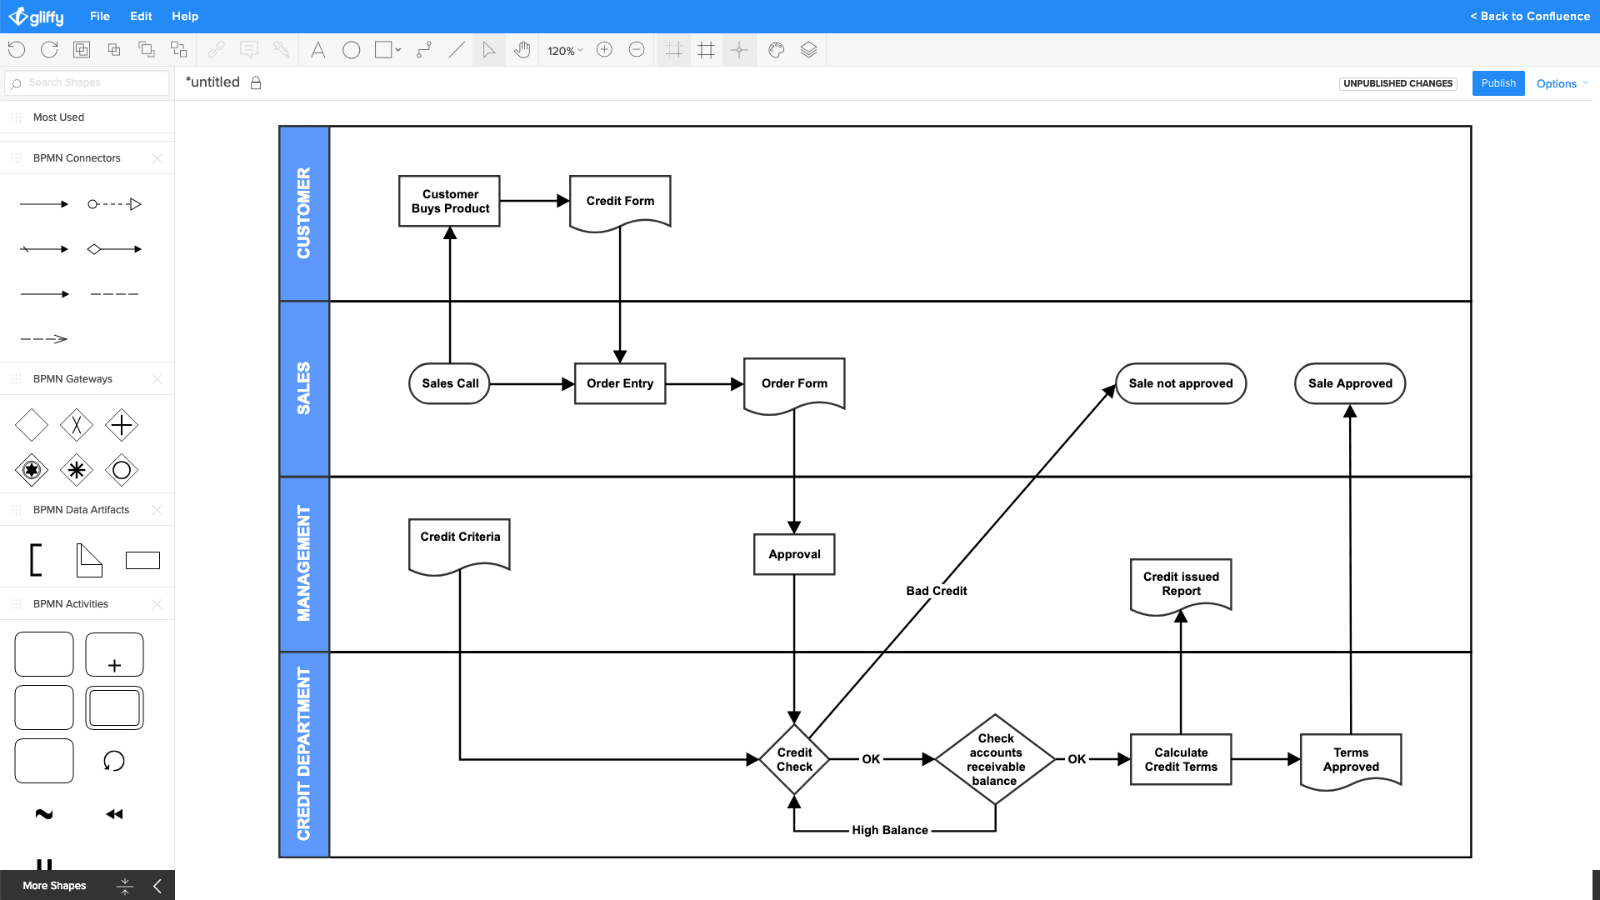 Diagramma del processo di transazione di e-commerce di esempio, fornito da Draw.io